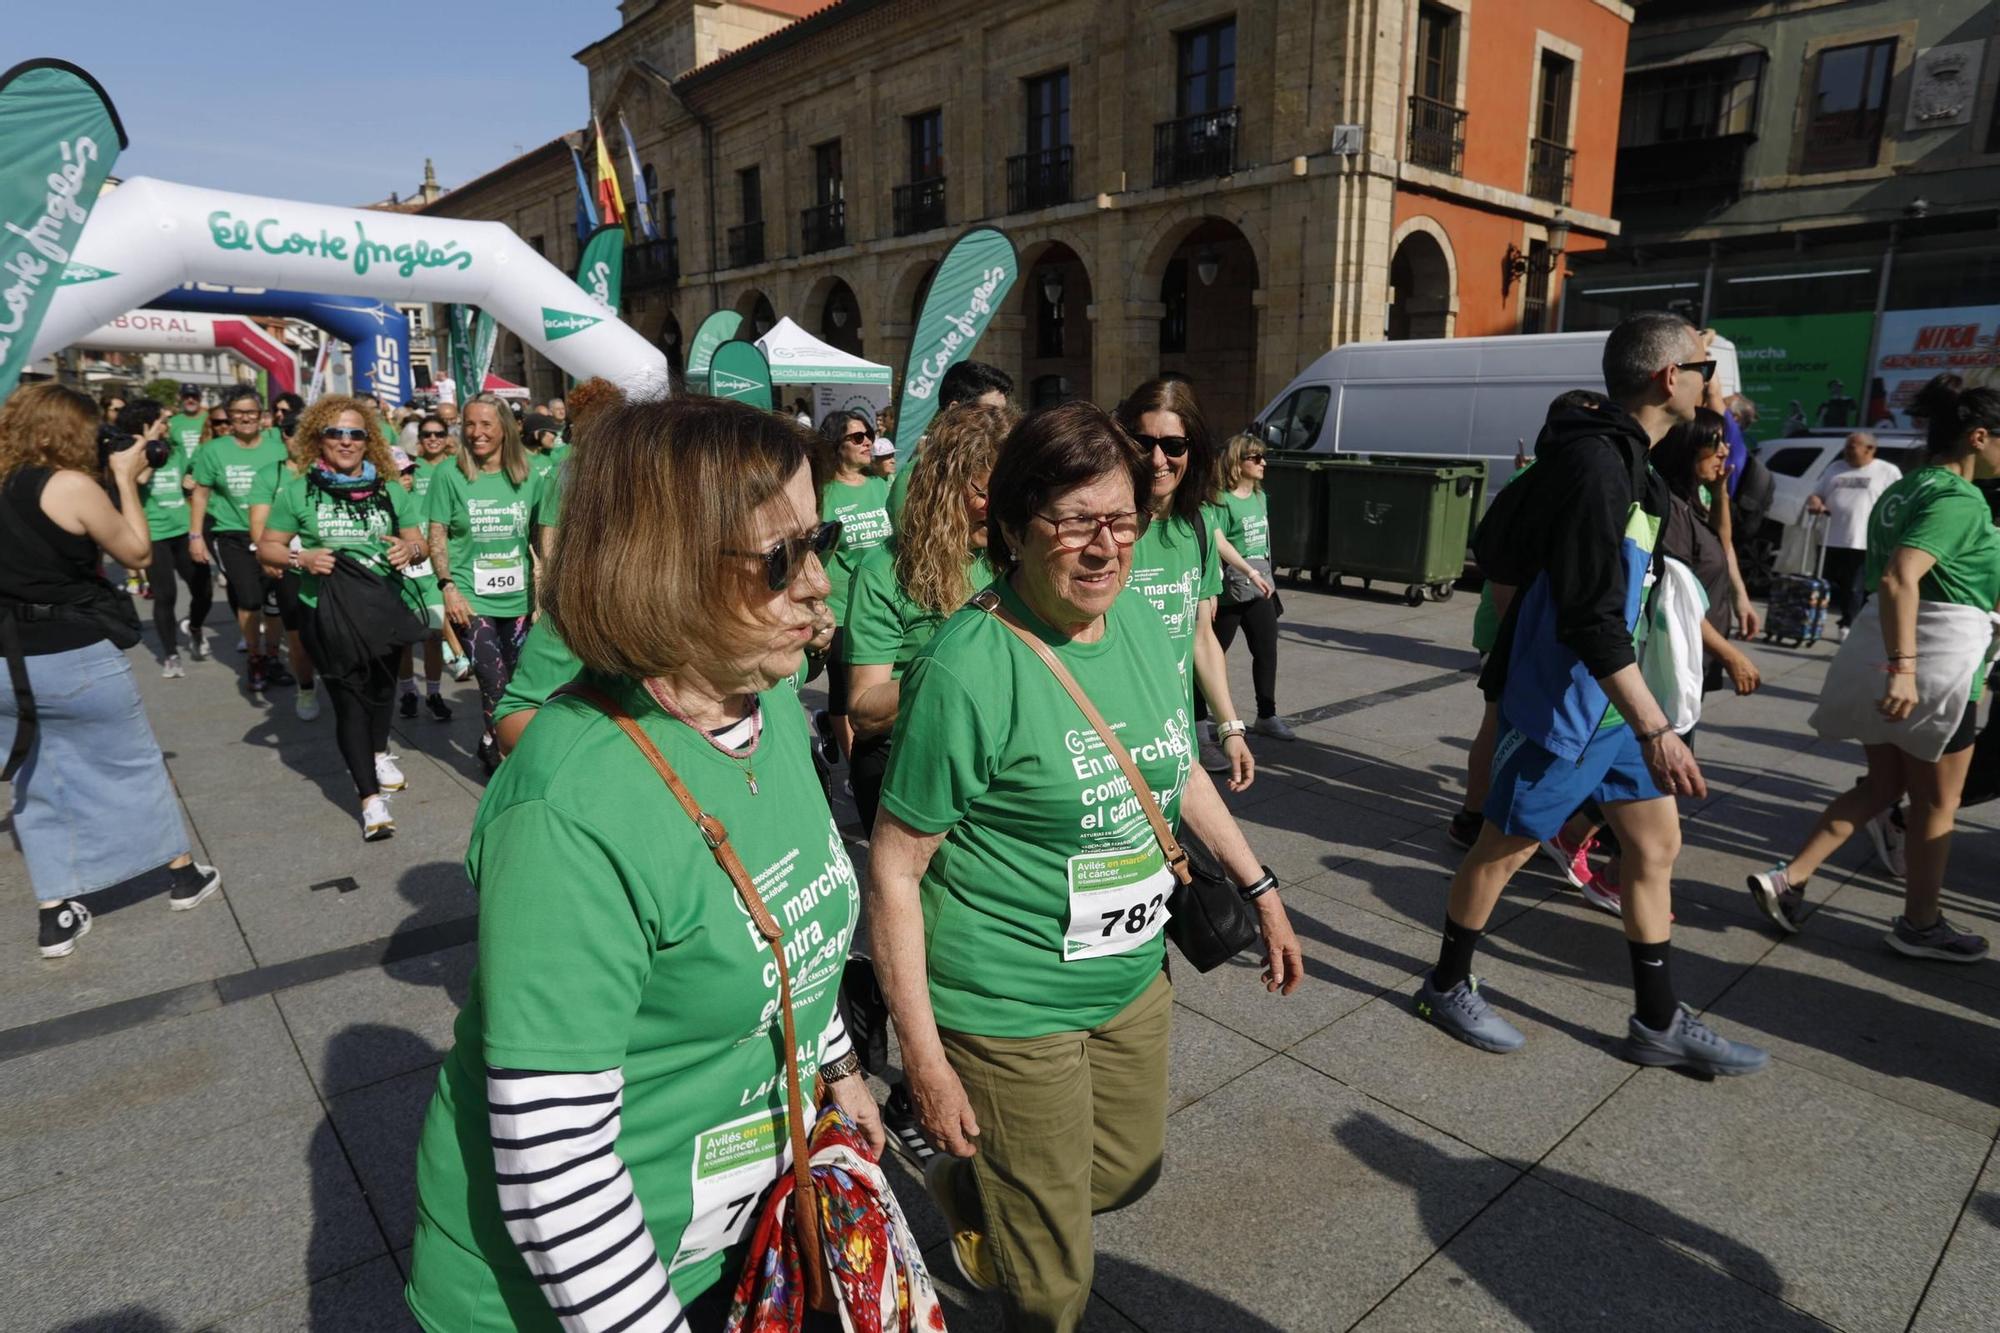 EN IMAGENES: La "marea verde" de la marcha contra el cáncer de Avilés